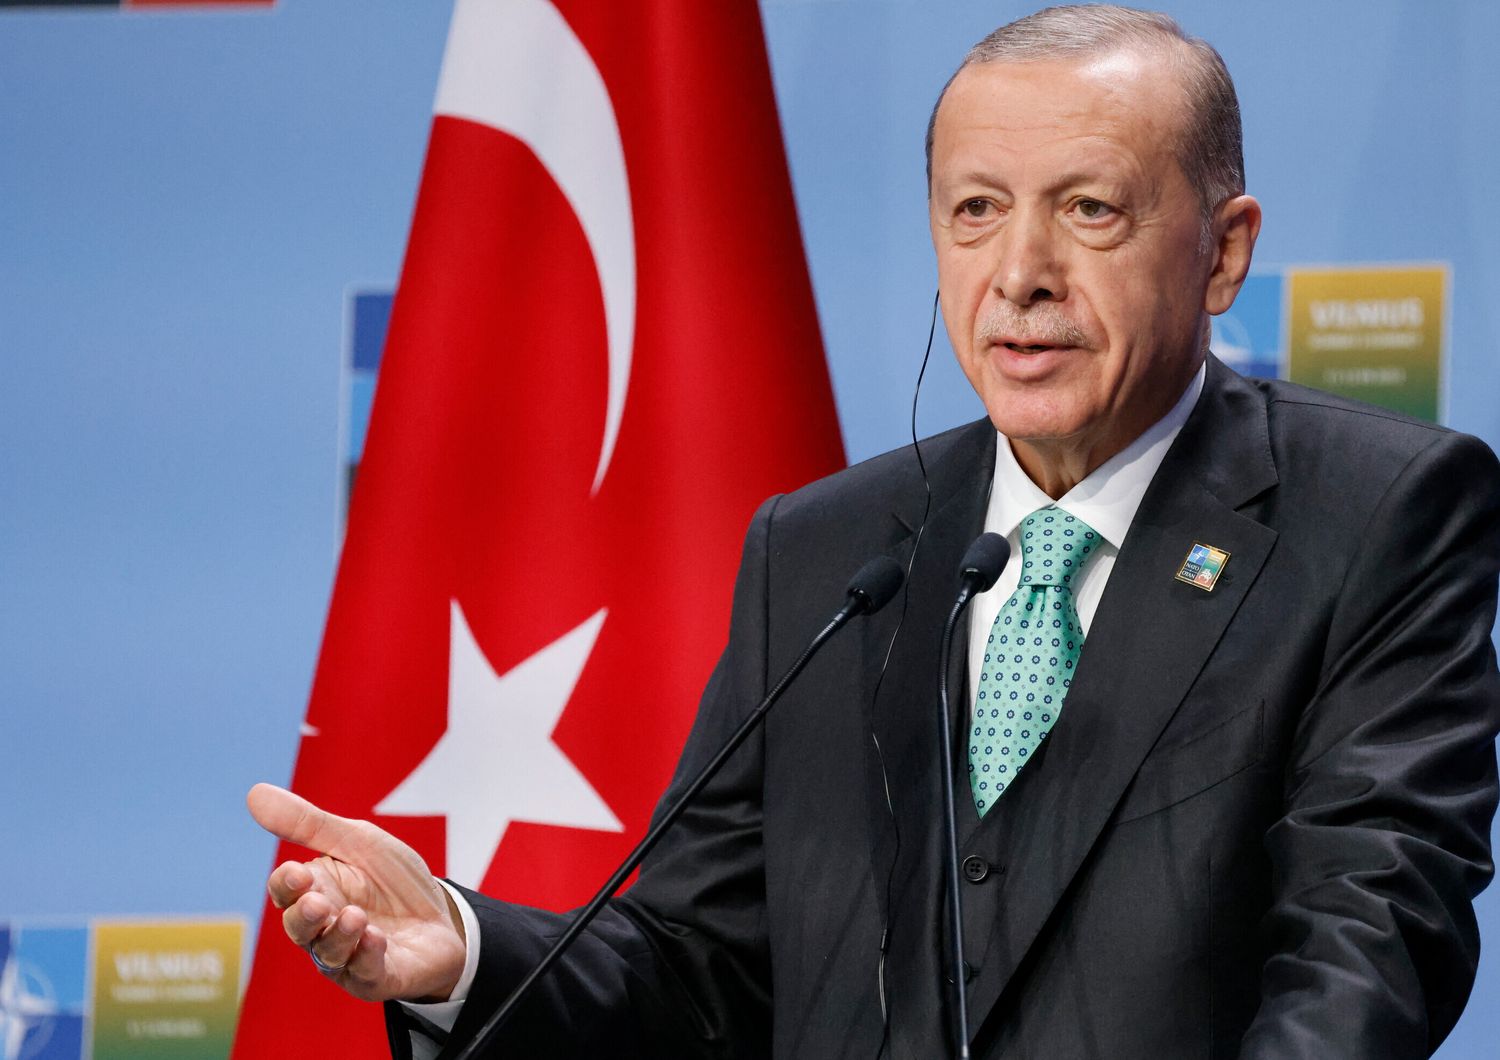 Il presidente turco Erdogan in conferenza stampa a Vilnius dopo il vertice della Nato